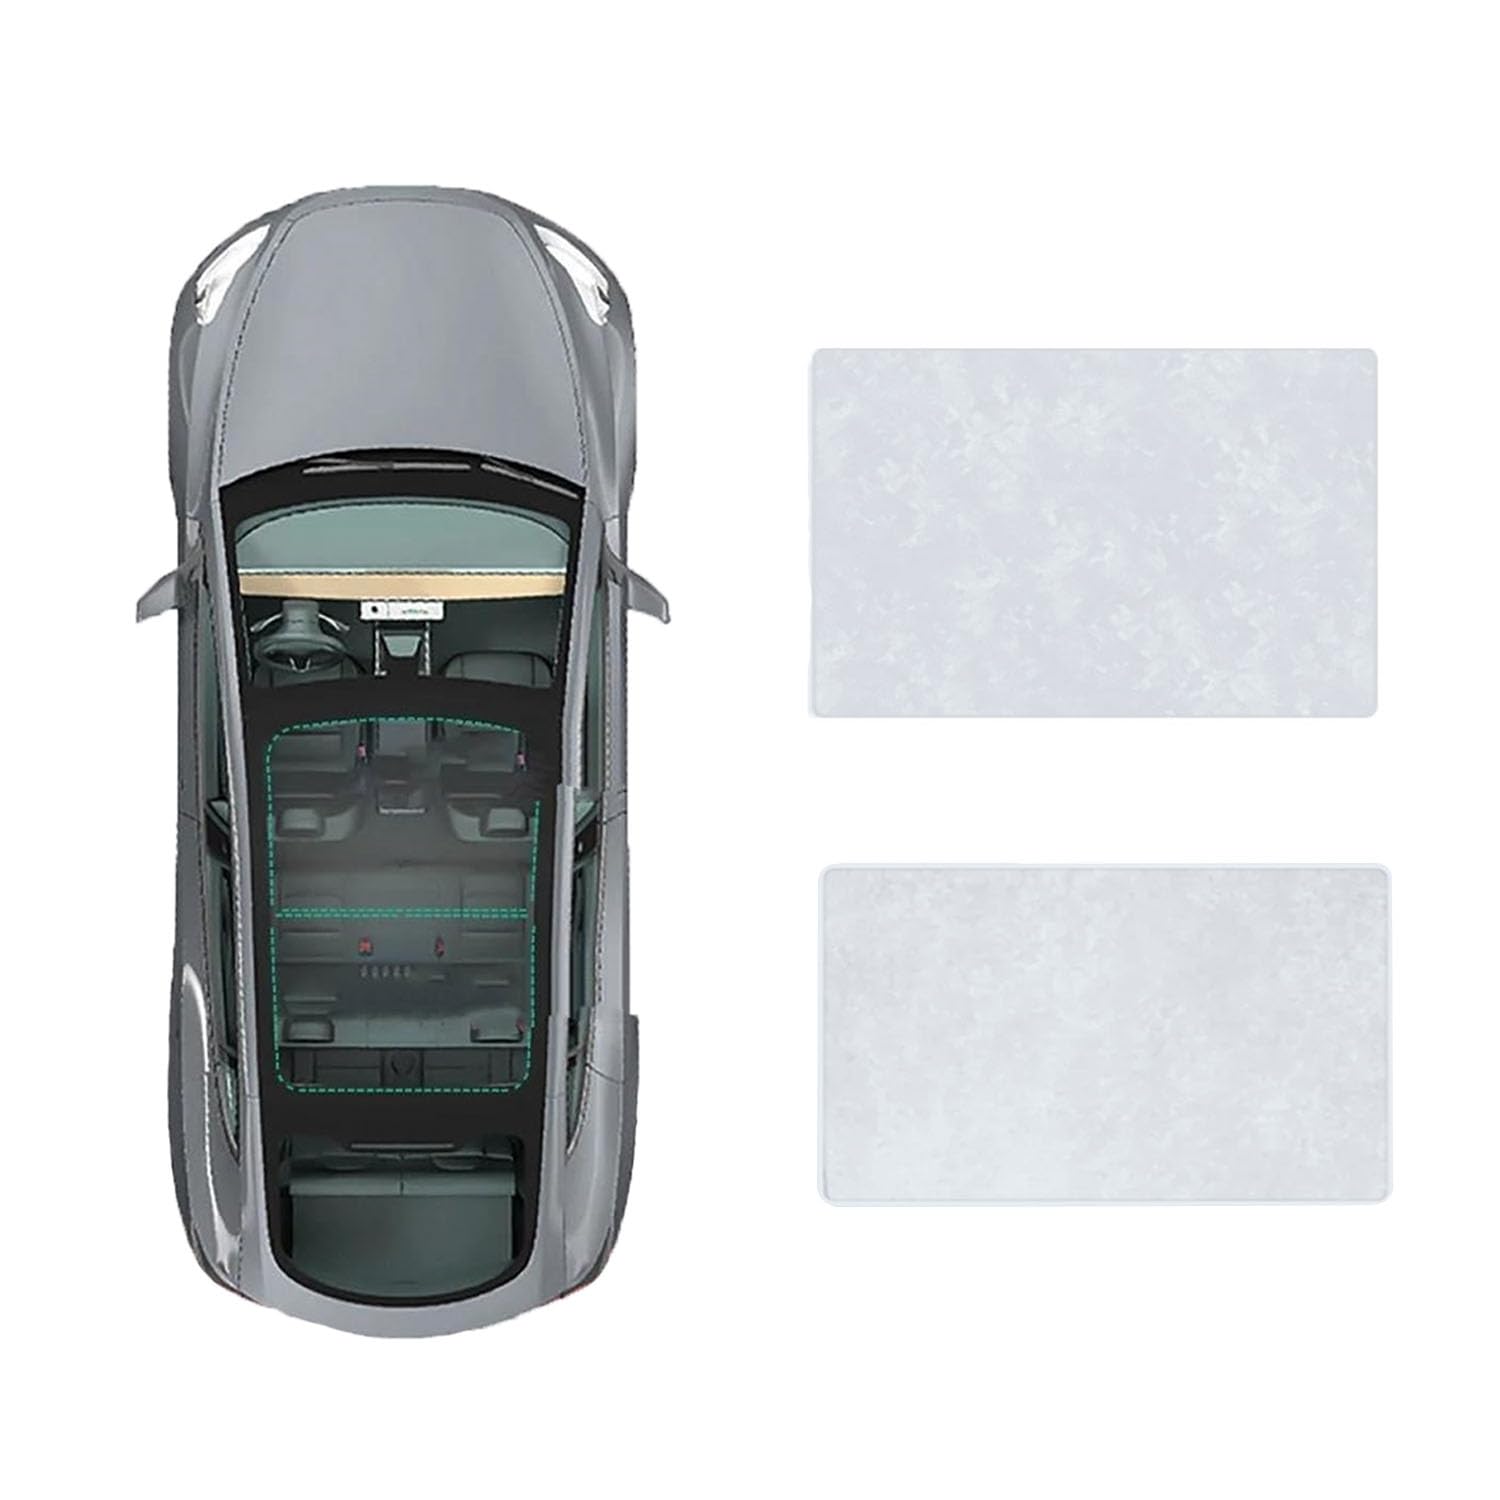 Für Buick E5 2023- Autofenster Sonnenschutz Dachsonnenschutz Auto Schiebedach Sonnenschirm Dachfenster Rollo Beschattung Zubehör,B-Gray White Suede von JiAYuF